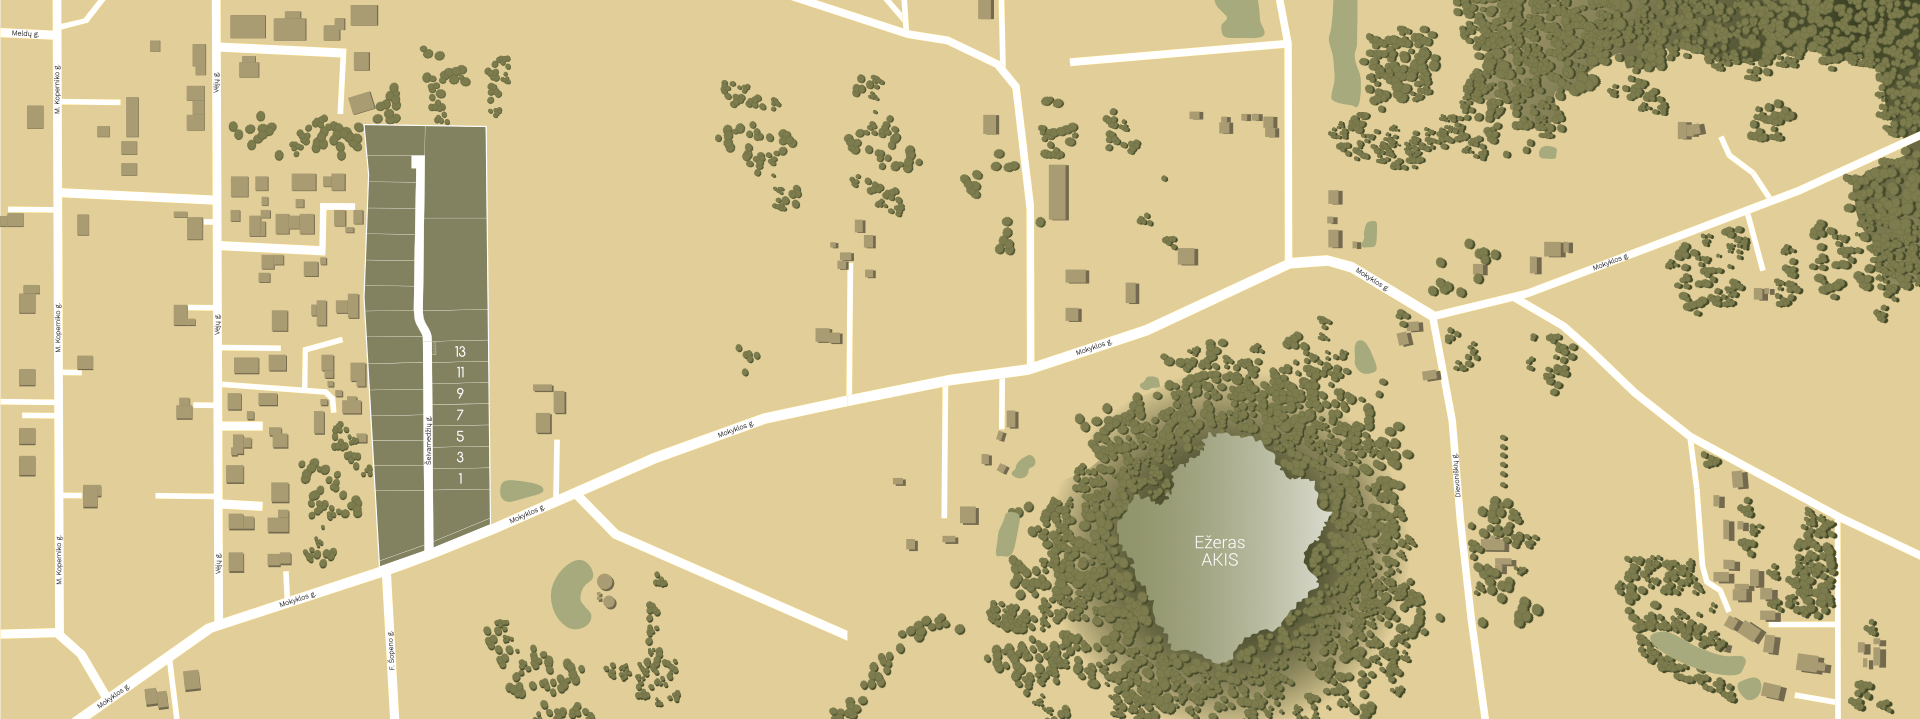 Village map design